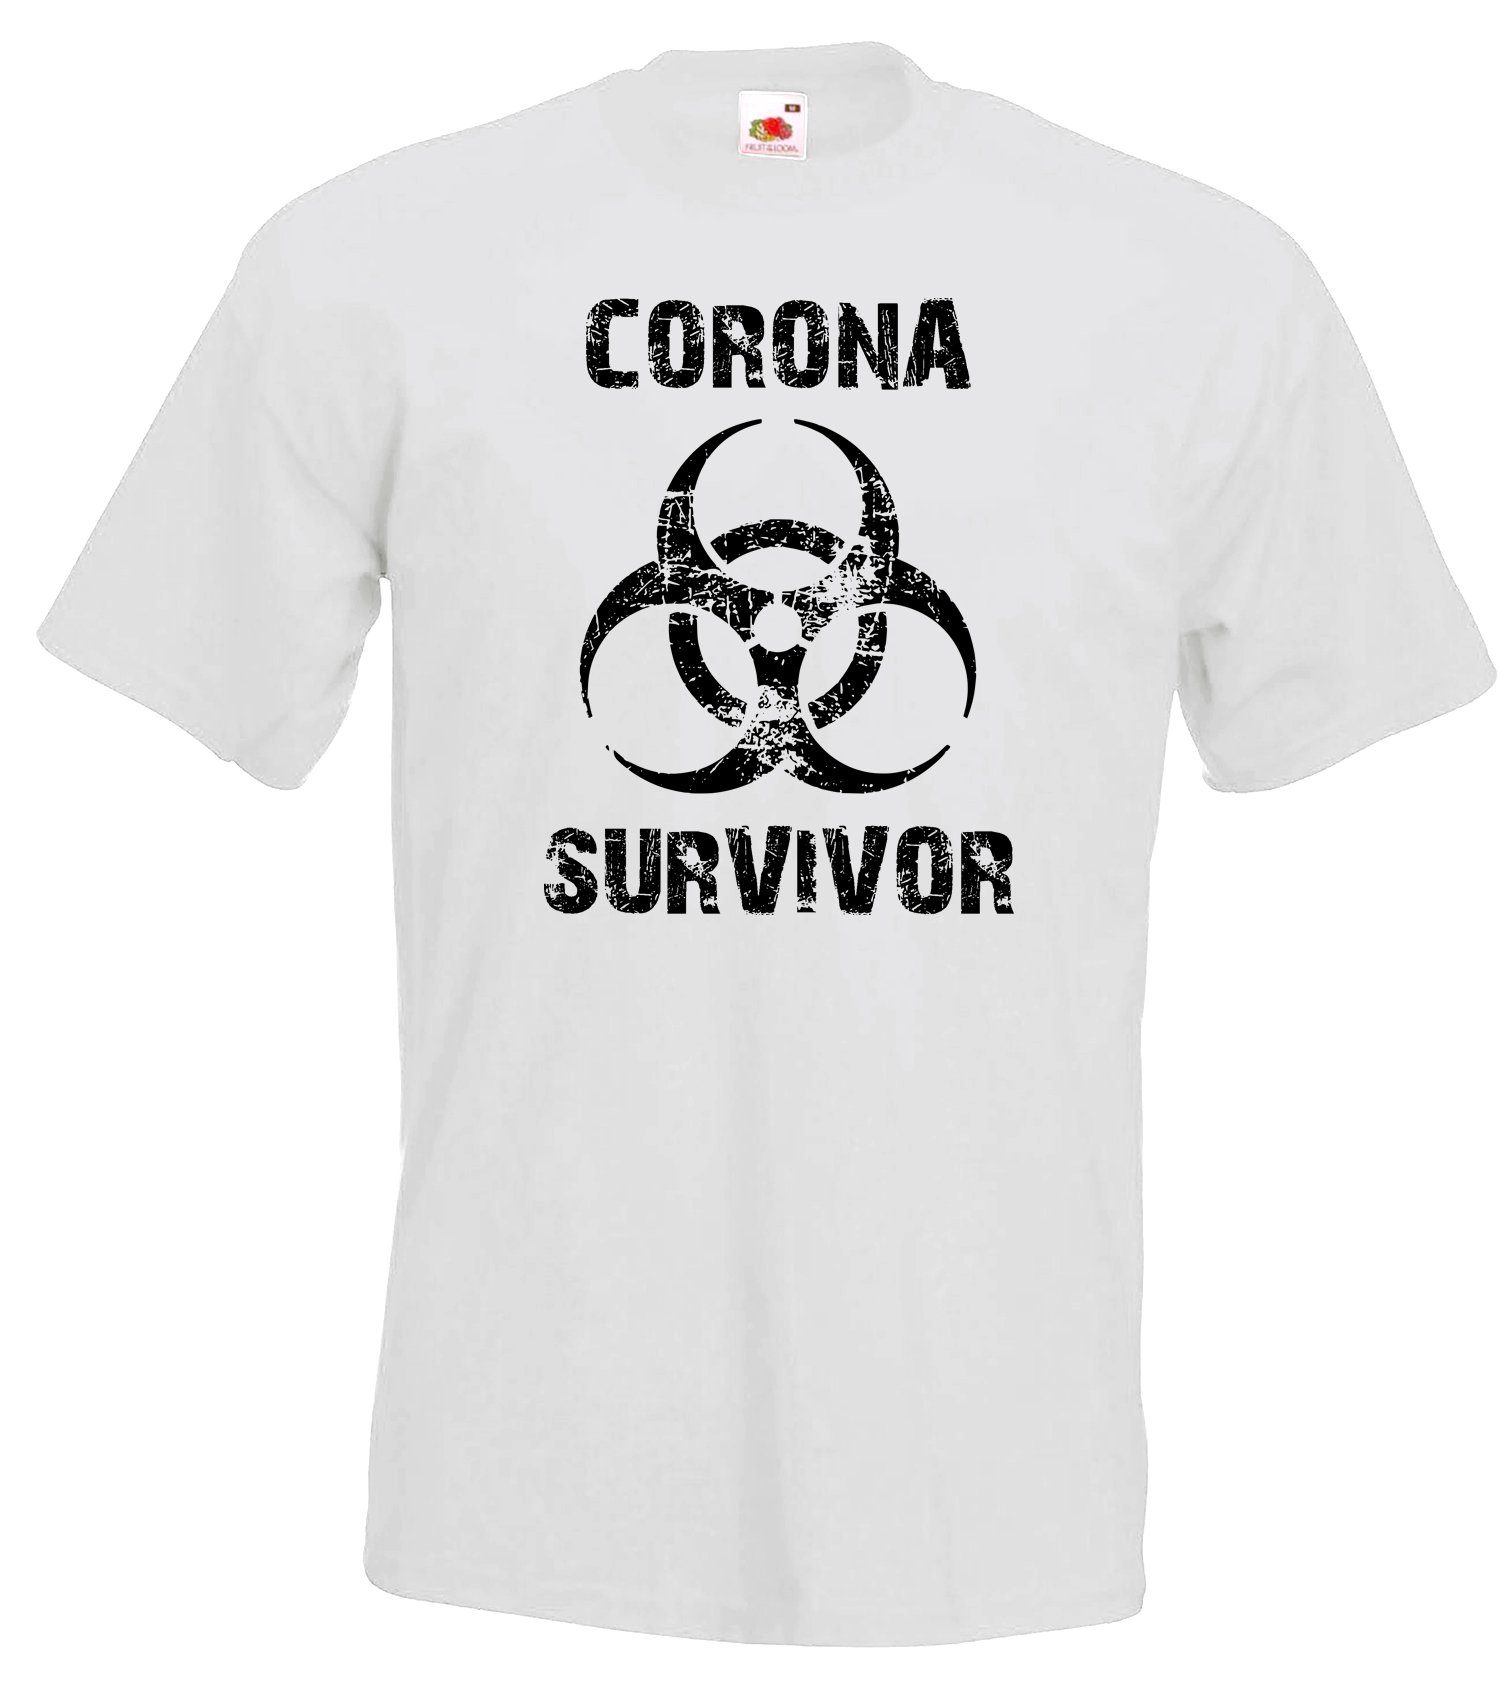 Weiß Corona Herren modischem Designz Frontprint Survivor Shirt mit Youth T-Shirt